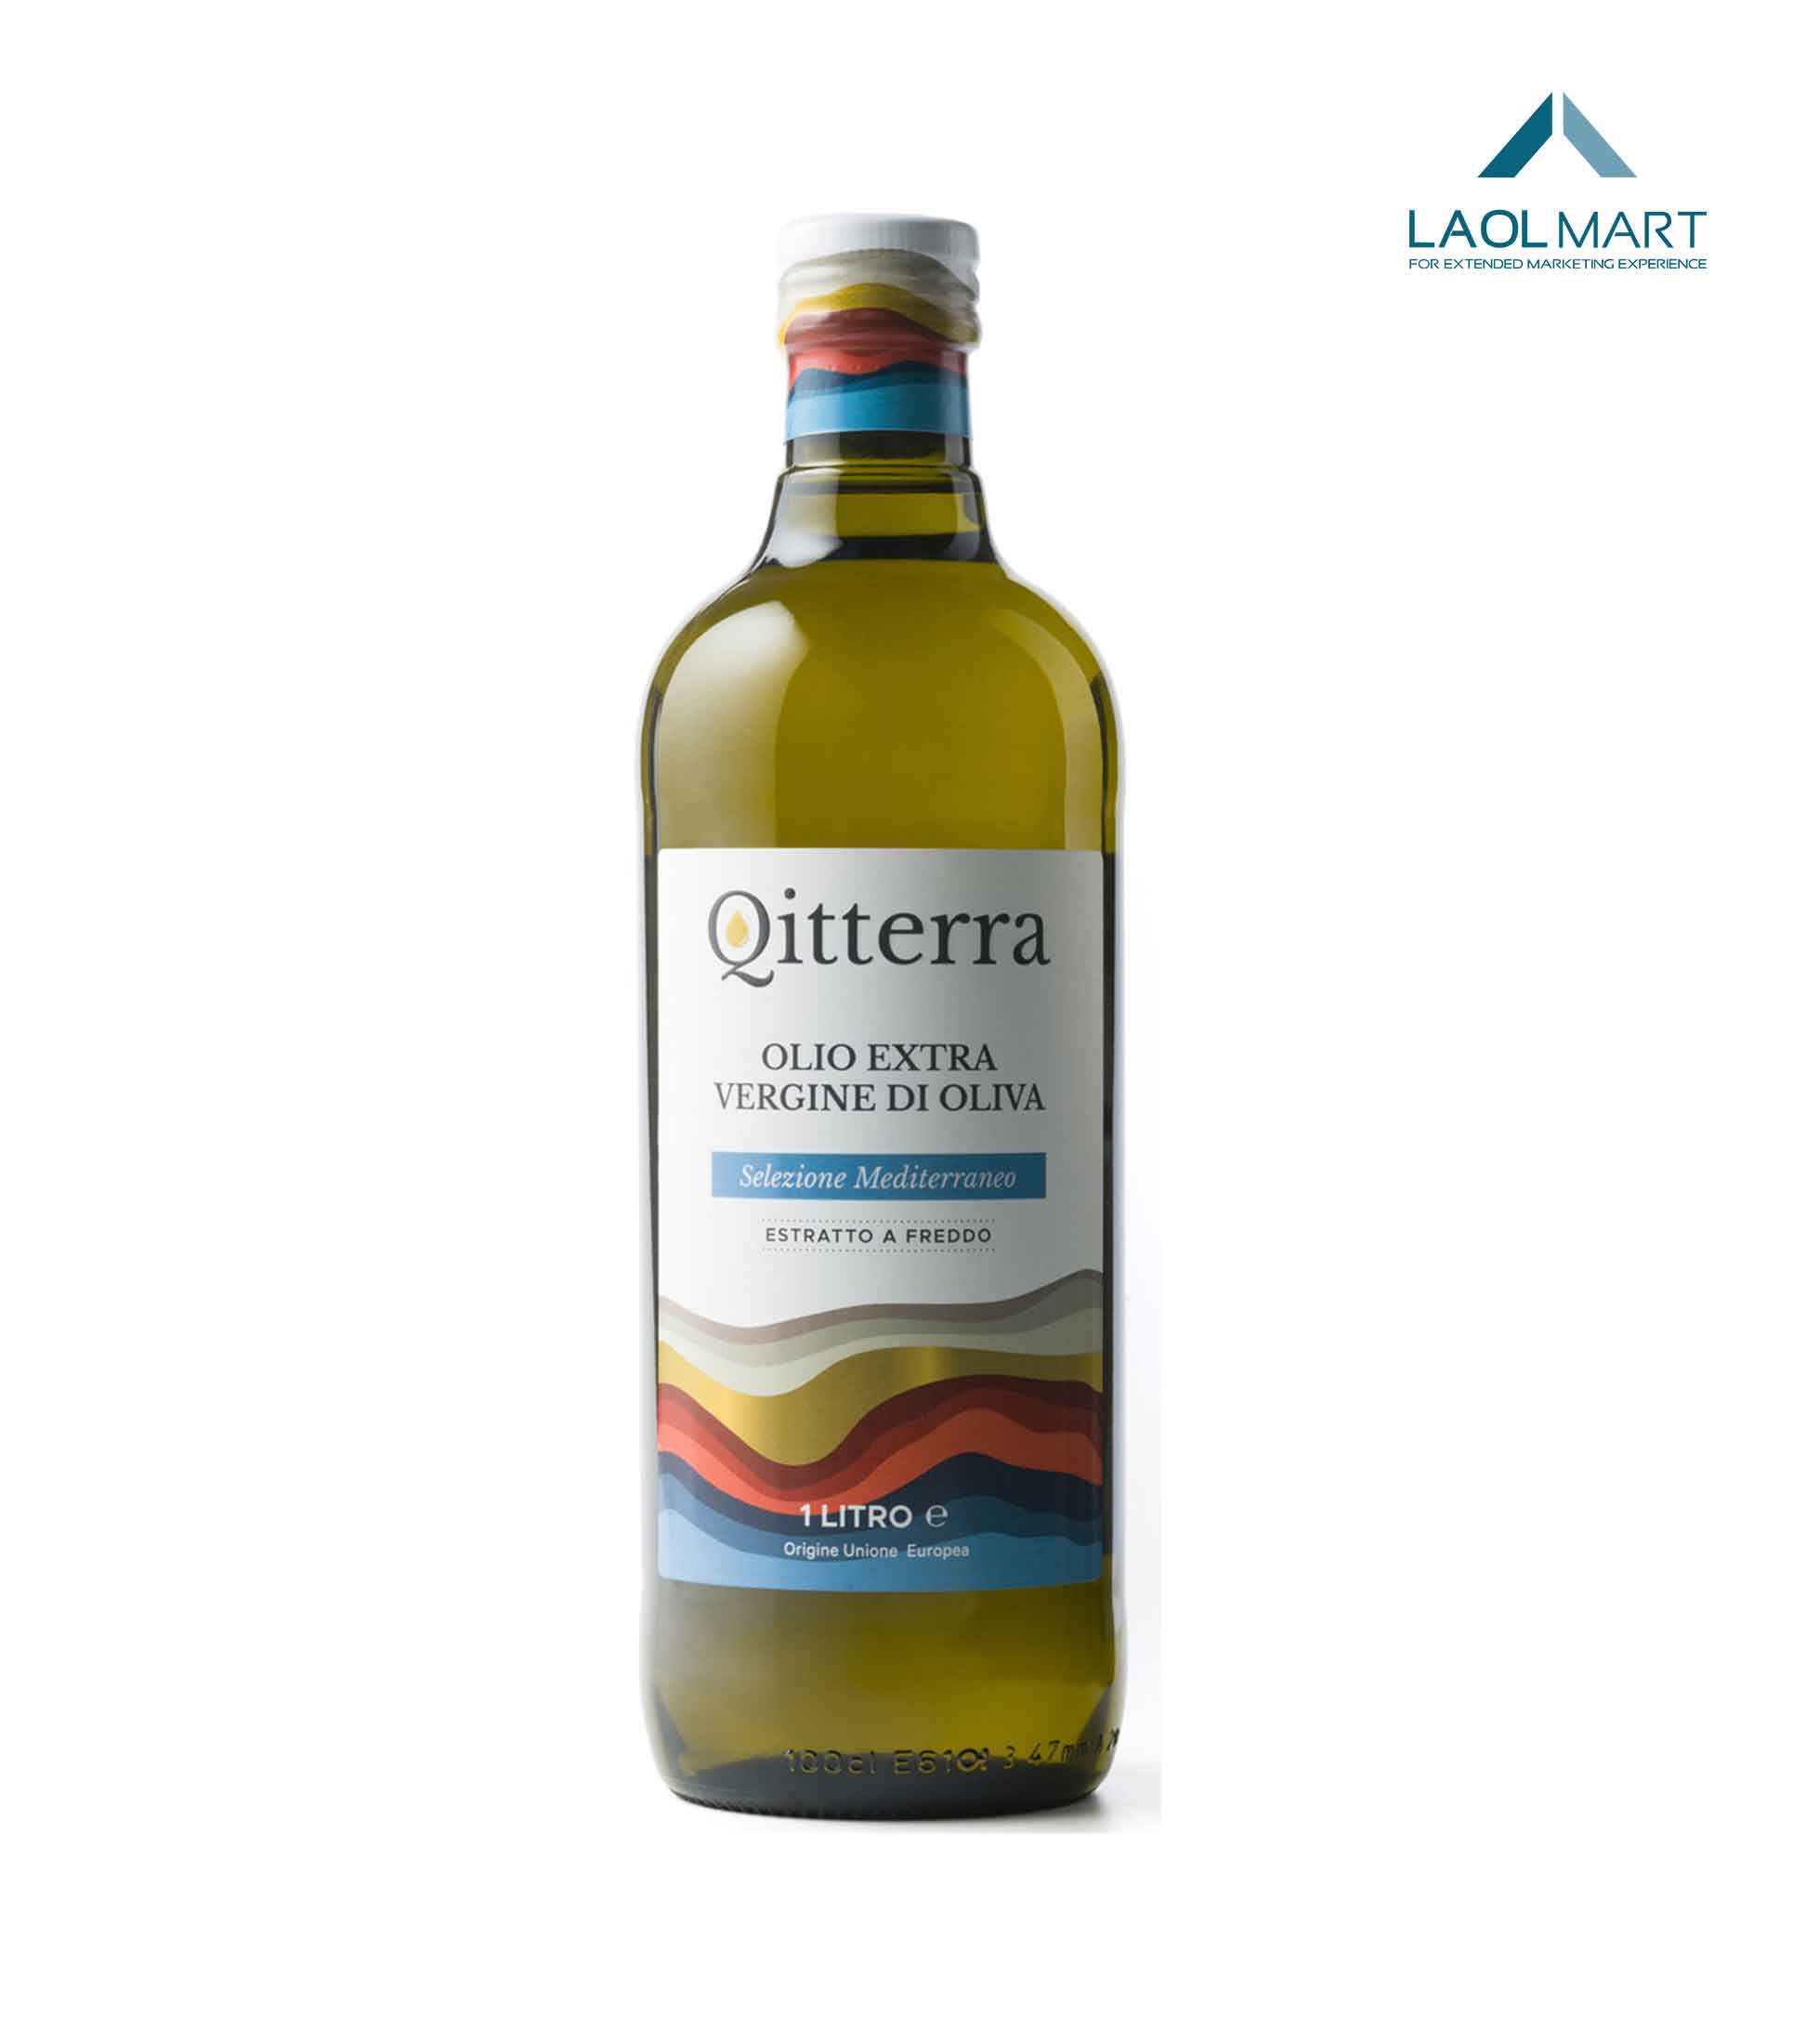 Qitterra 1L - Ex Virgin Olive Oil